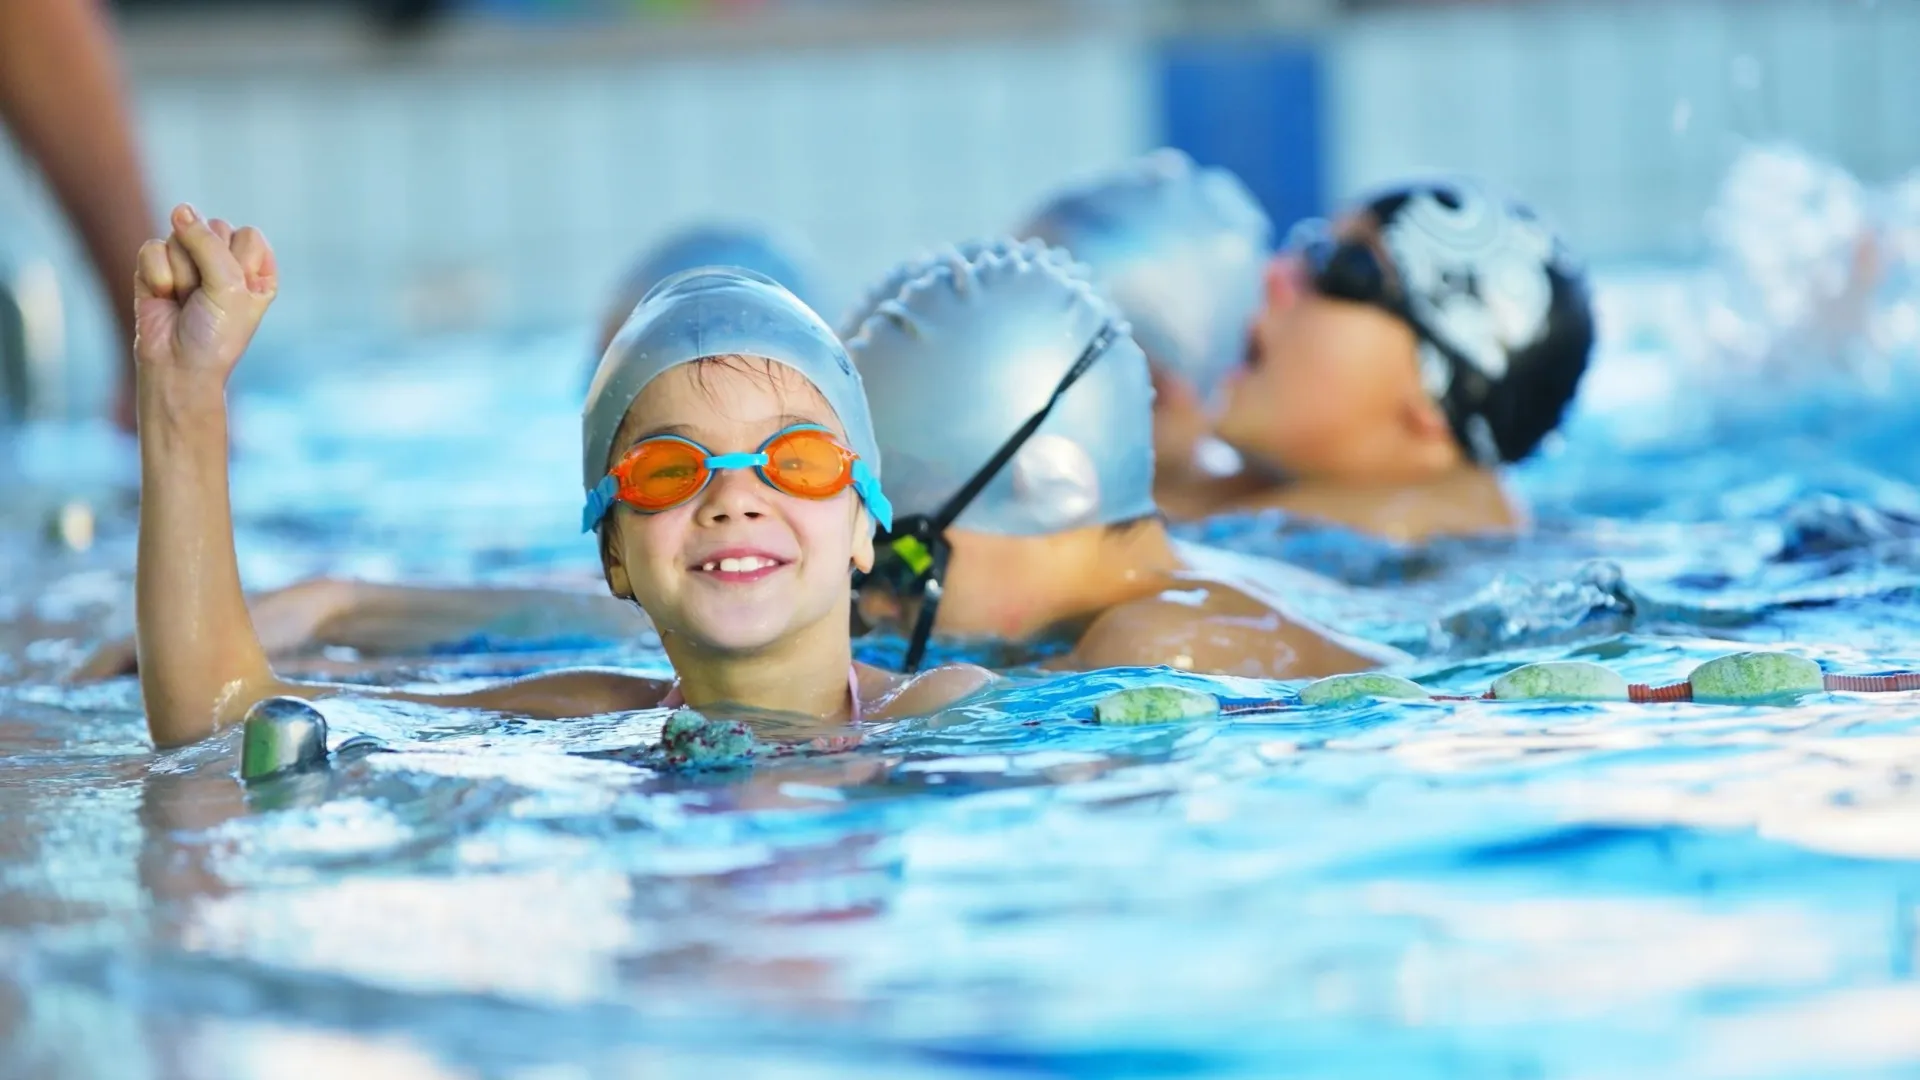 Ямальским школьникам понравились уроки в бассейне. Фото: seyomedo/Shutterstock/Fotodom